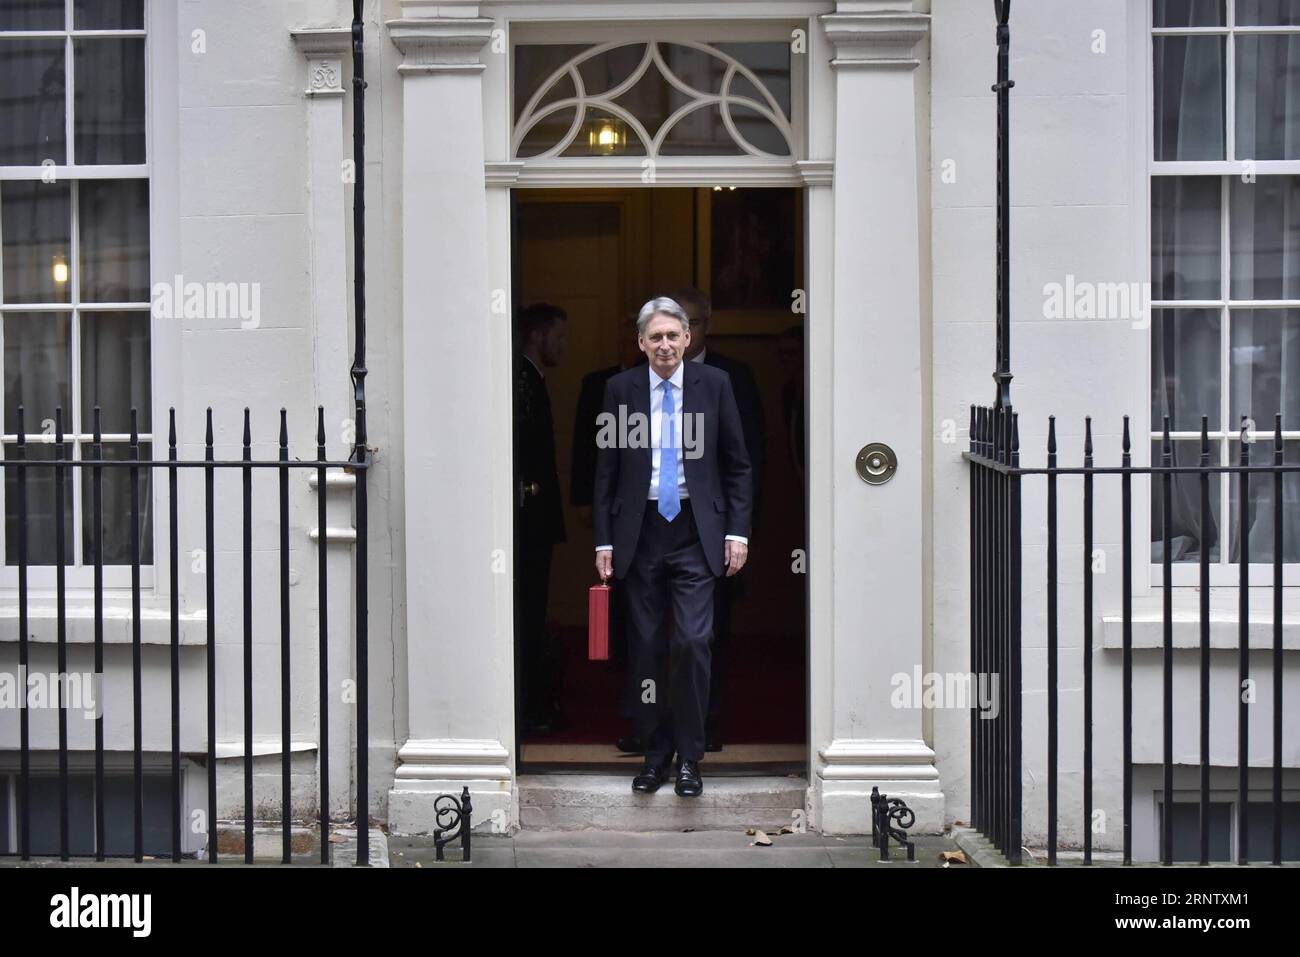 (171122) -- LONDRES, le 22 novembre 2017 -- le chancelier de l'Échiquier britannique Philip Hammond quitte le 11 Downing Street pour remettre son budget au Parlement à Londres, en Grande-Bretagne, le 22 novembre 2017. Hammond a dévoilé mercredi le budget principal pour l'année à venir dans un contexte d'incertitude liée au Brexit et de croissance économique modérée. BRITAIN-LONDON-EXCHEQUER-CHANCELLOR-BUDGET-DÉVOILEMENT STEPHENXCHUNG PUBLICATIONXNOTXINXCHN Banque D'Images